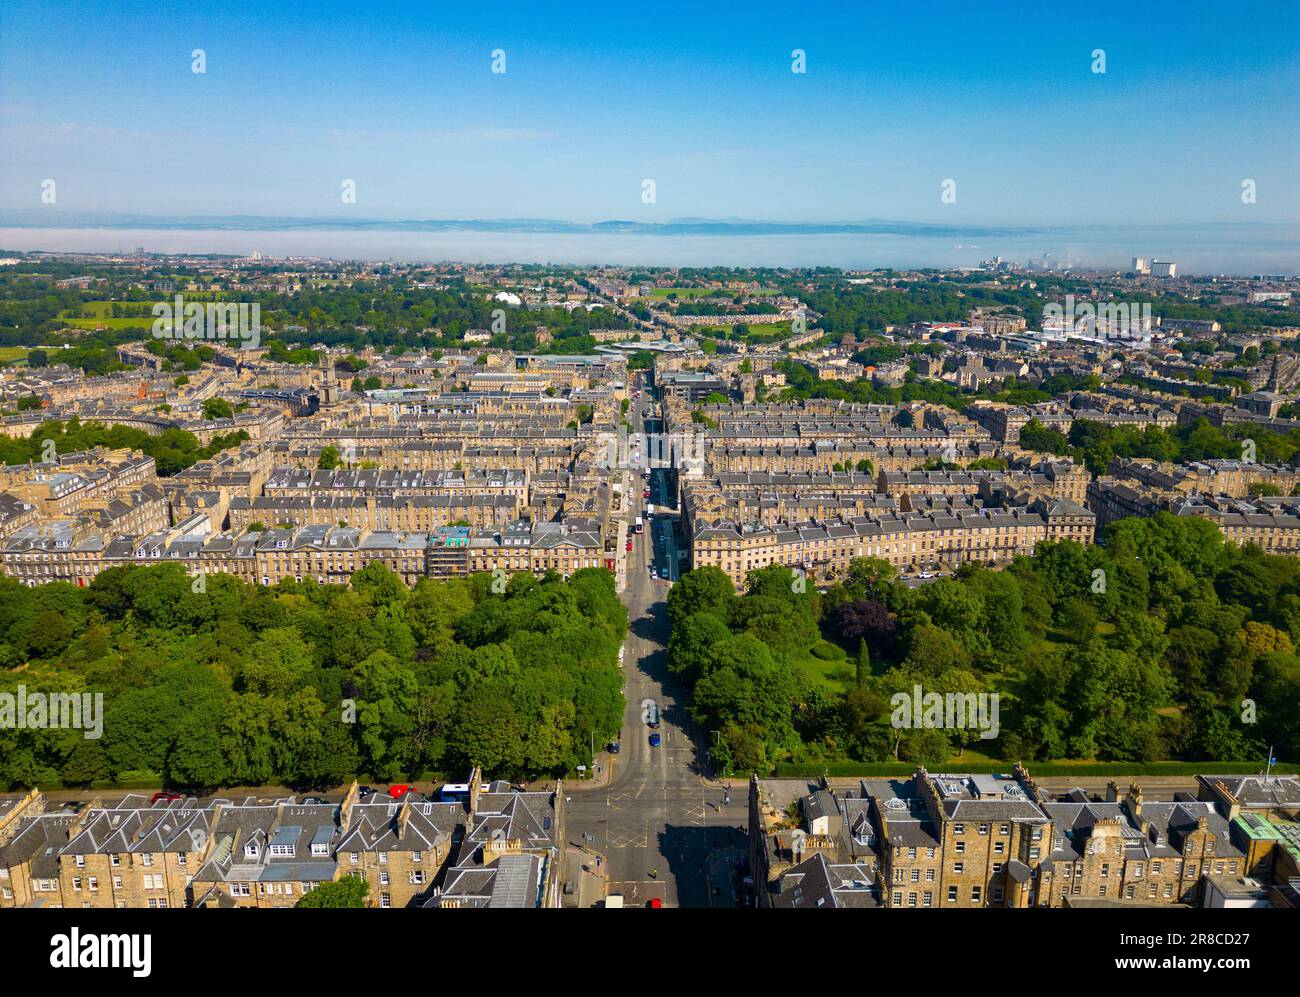 Vista aerea della città nuova, sito patrimonio dell'umanità dell'UNESCO a Edimburgo, Scozia, Regno Unito Foto Stock